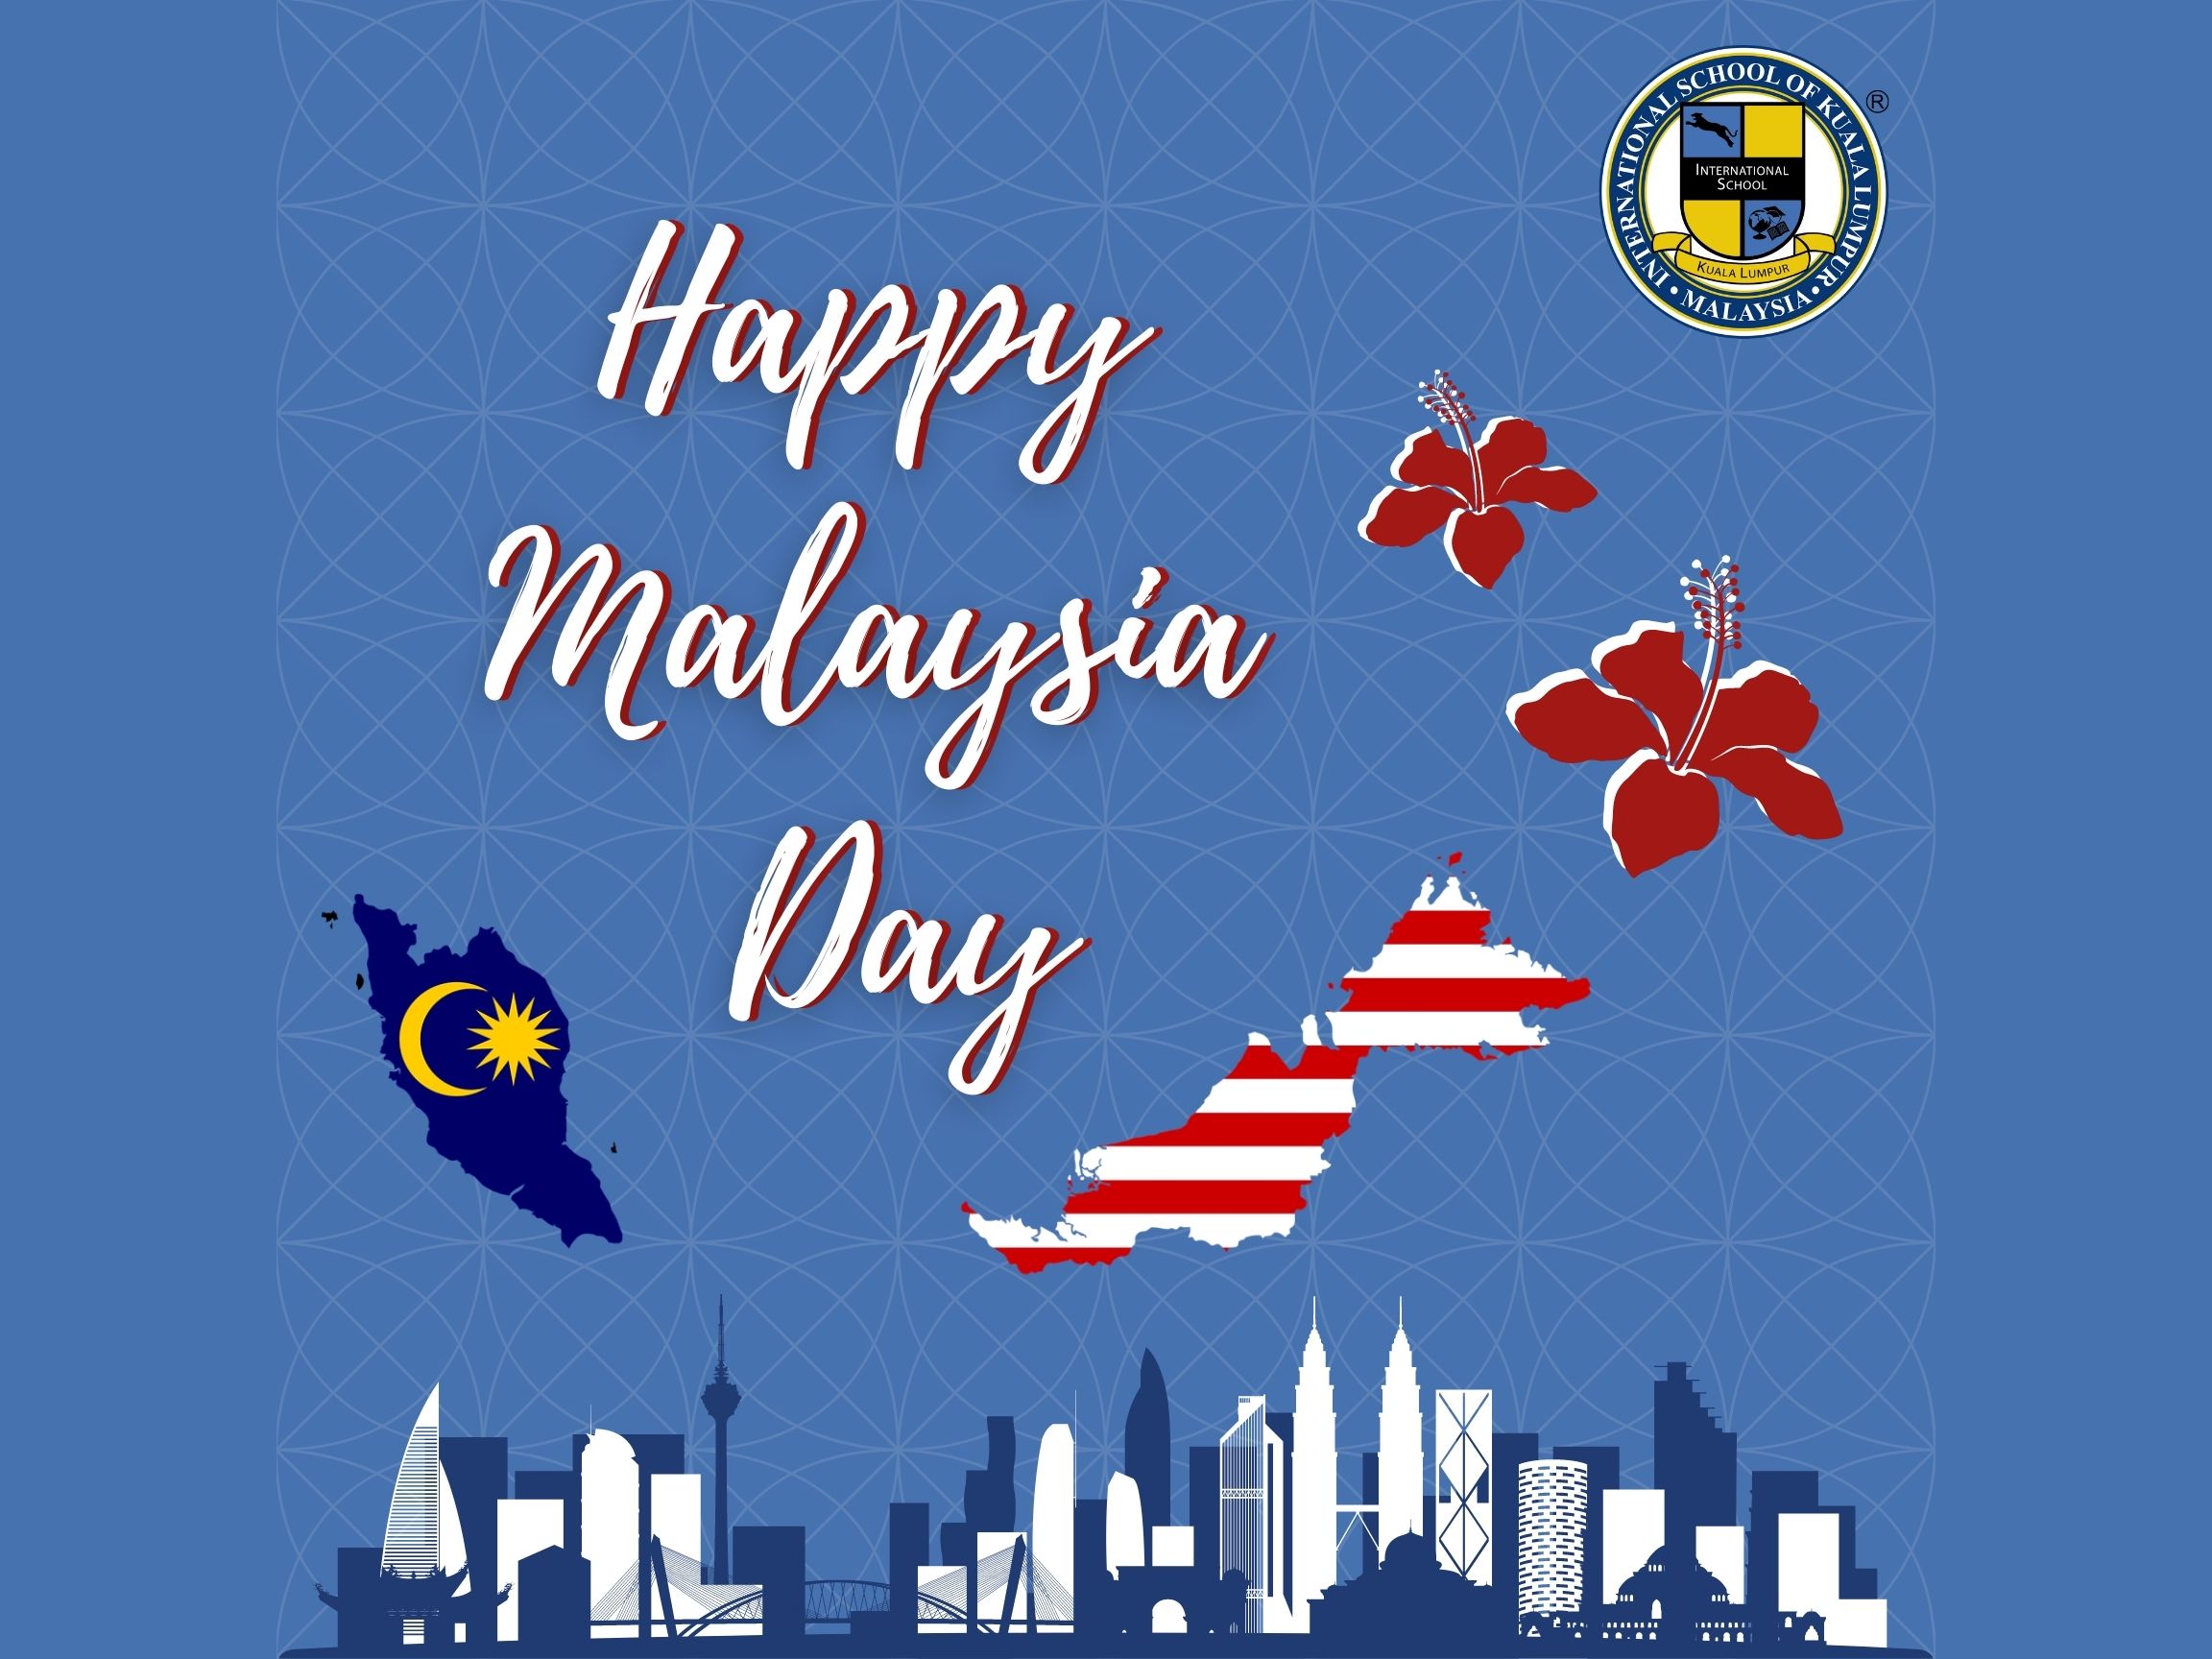 ISKL Malaysia Day